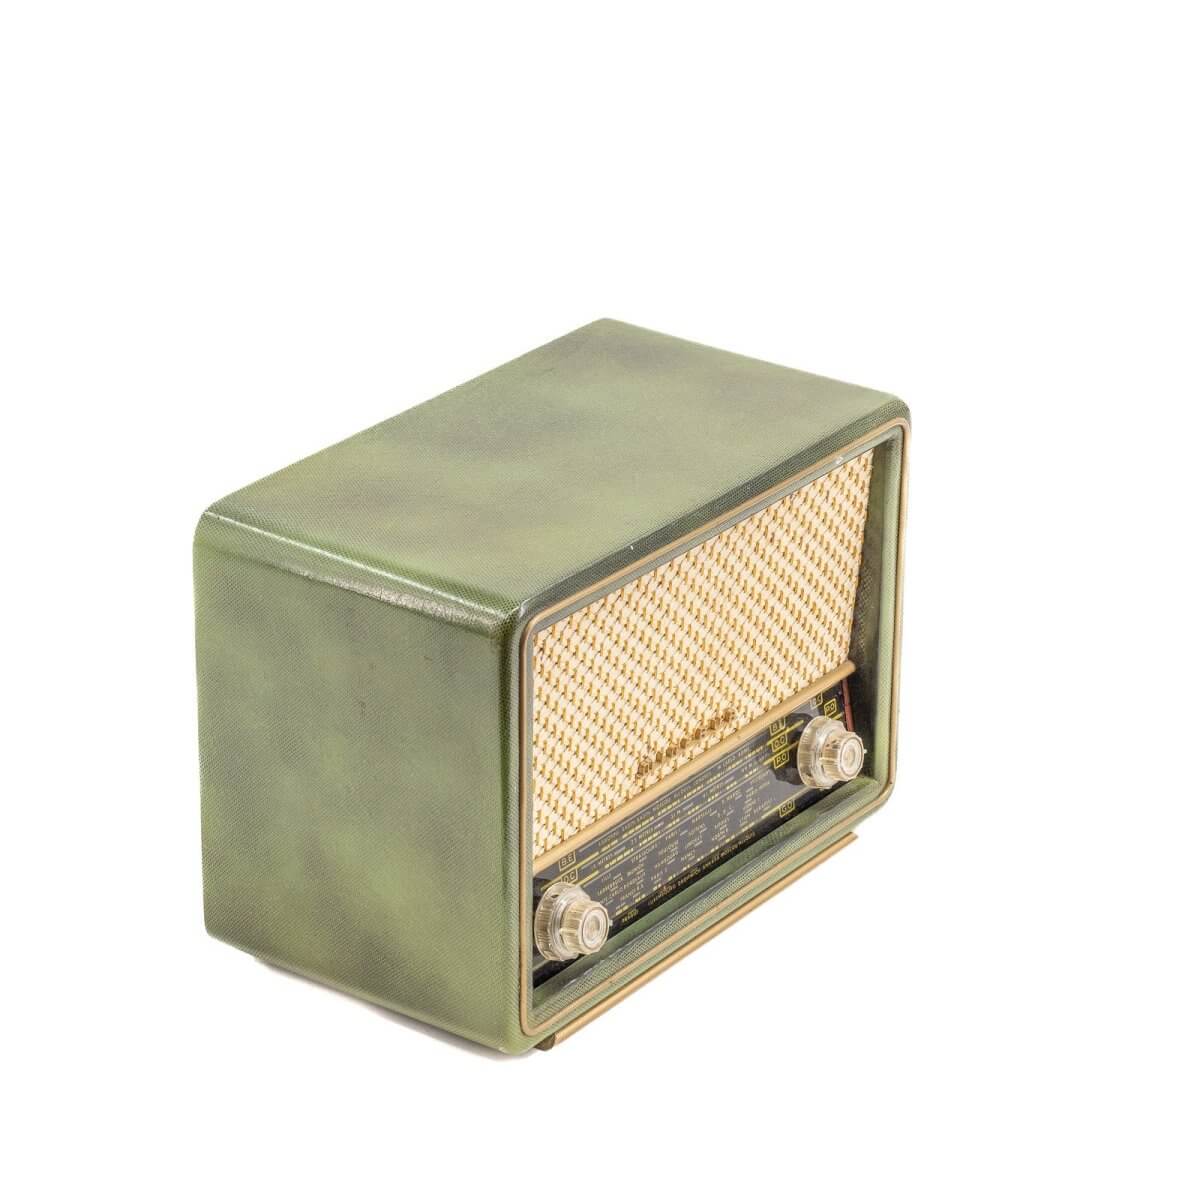 Radio Bluetooth Minerva Vintage 50’S-A.bsolument-enceintes-et-radios-vintage-bluetooth